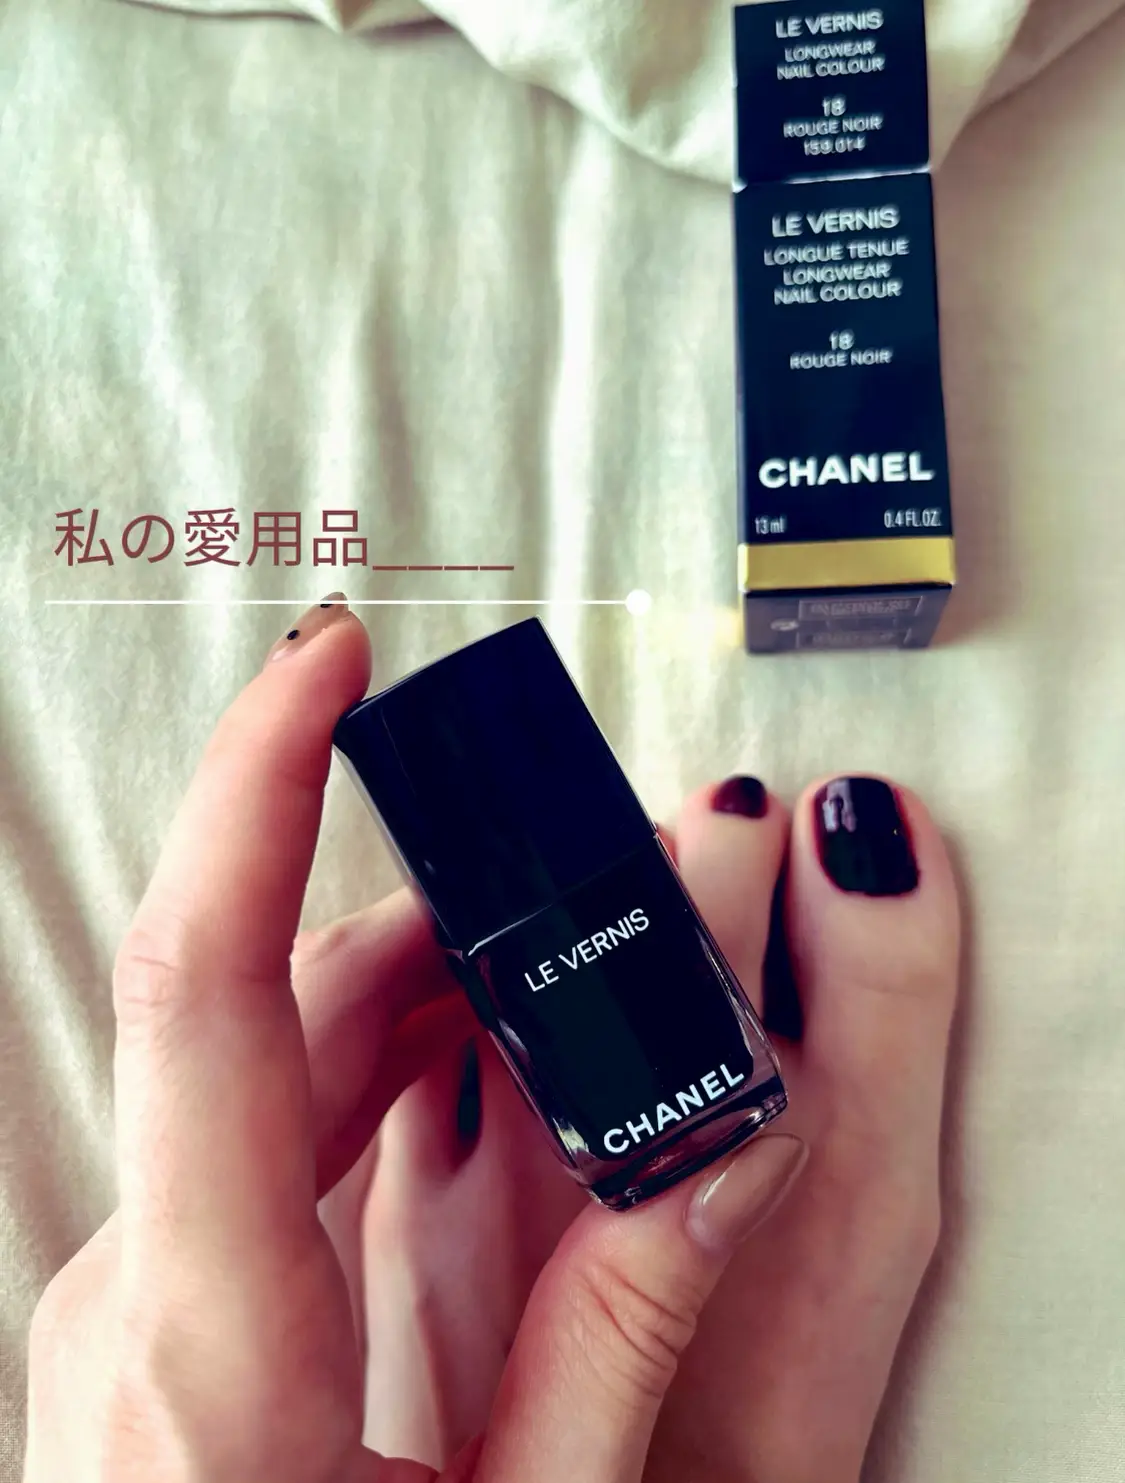 Le Vernis Longwear Nail Colour # 504 Organdi by Chanel for Women - 0.4 oz  Nail Polish